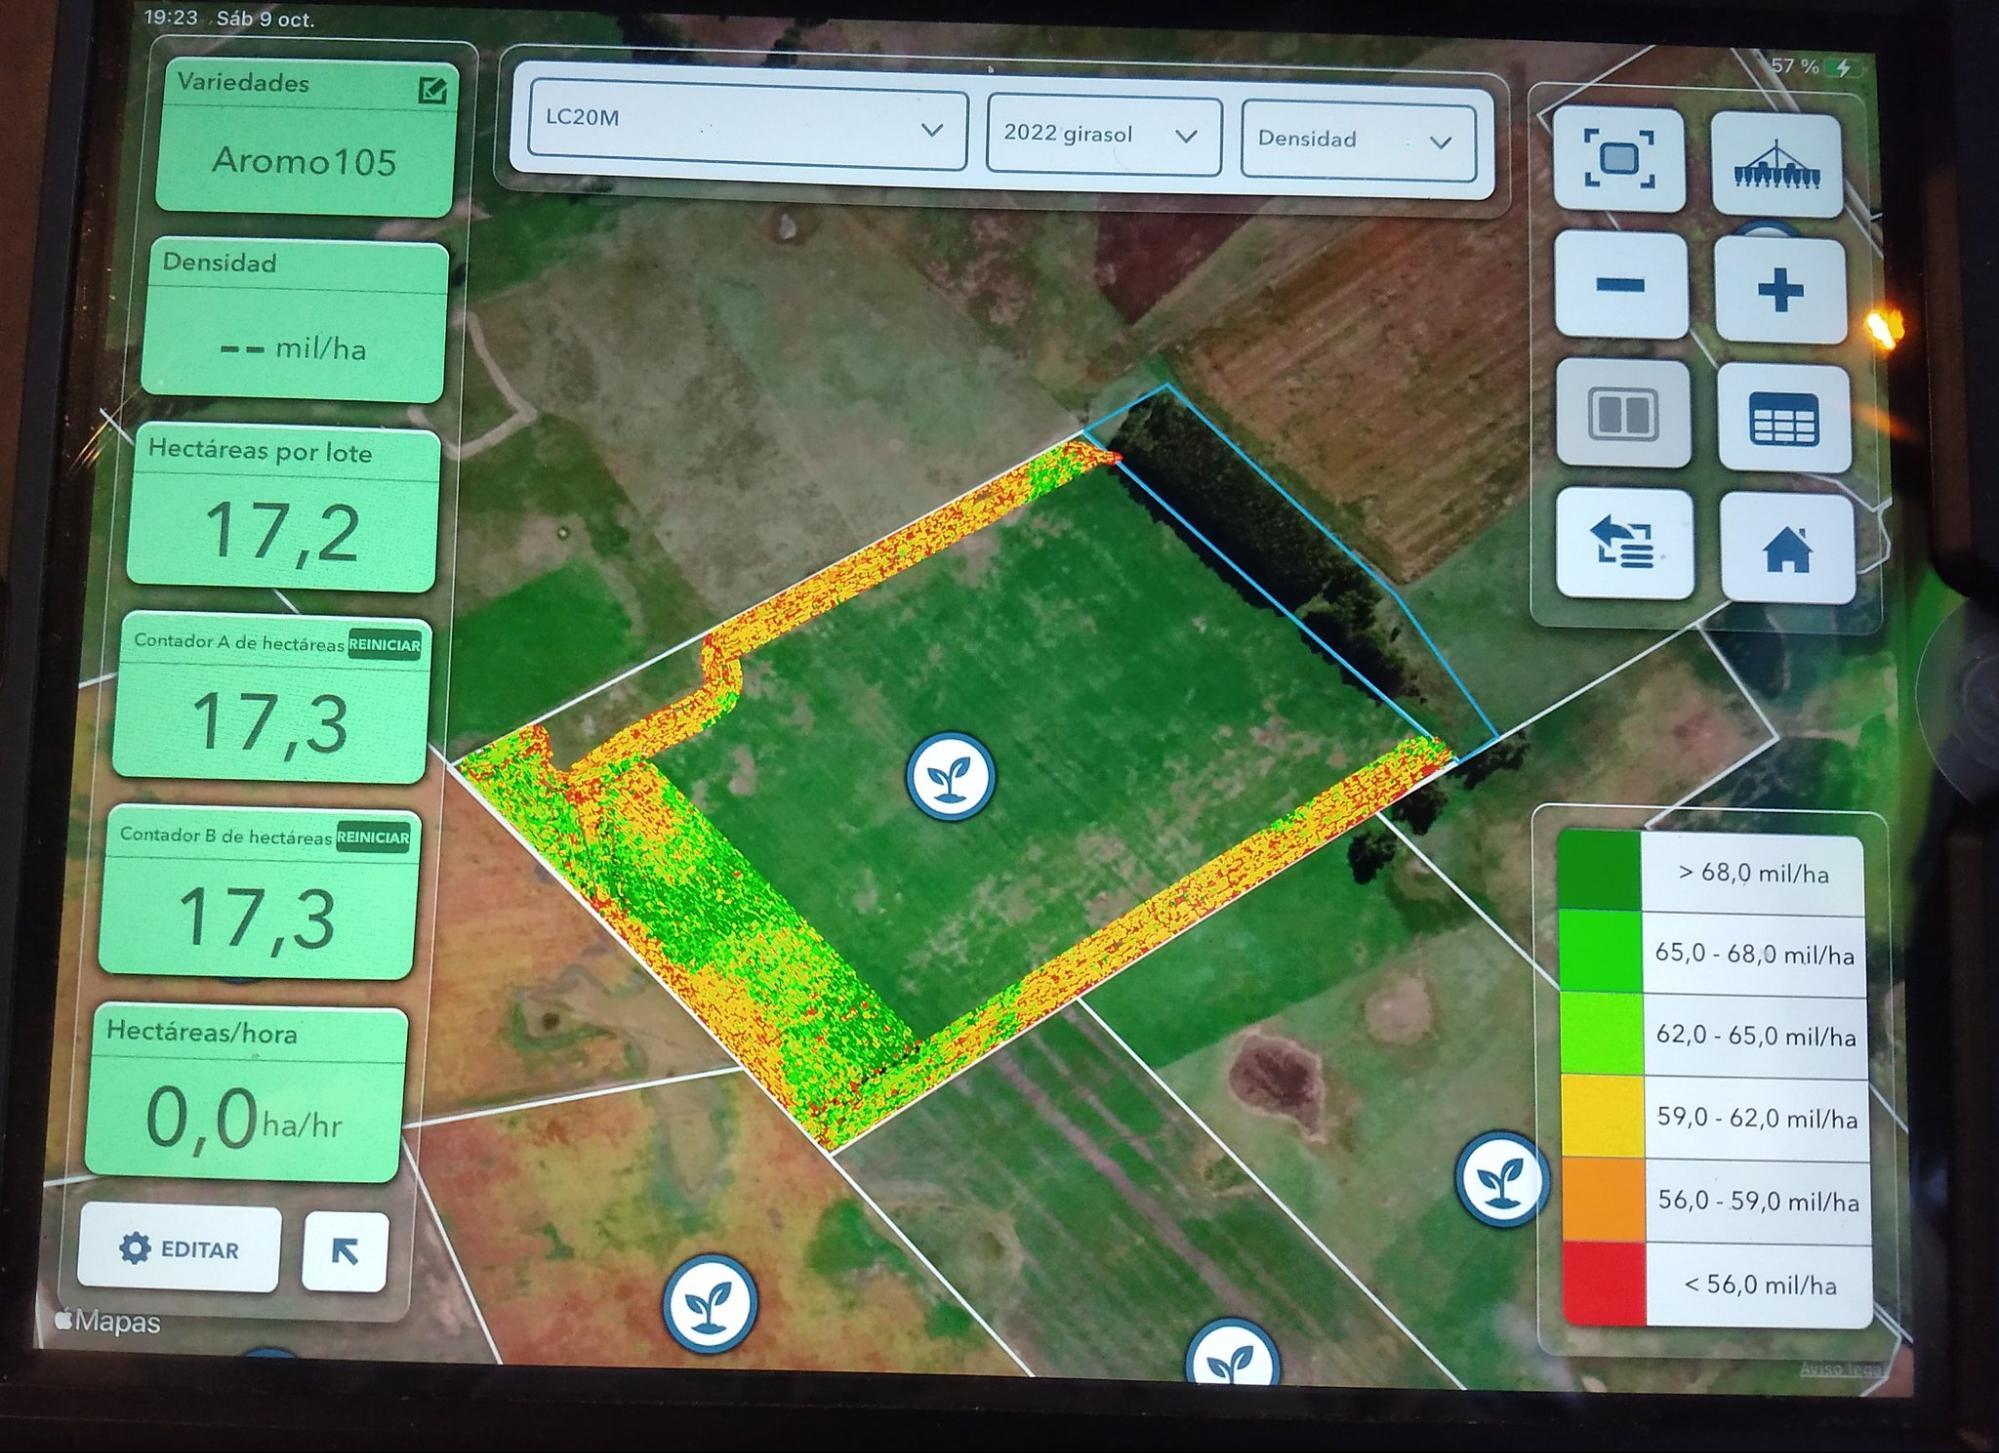  Foto de plataforma digital con datos detallados de variedades, hectáreas por lote y otras métricas